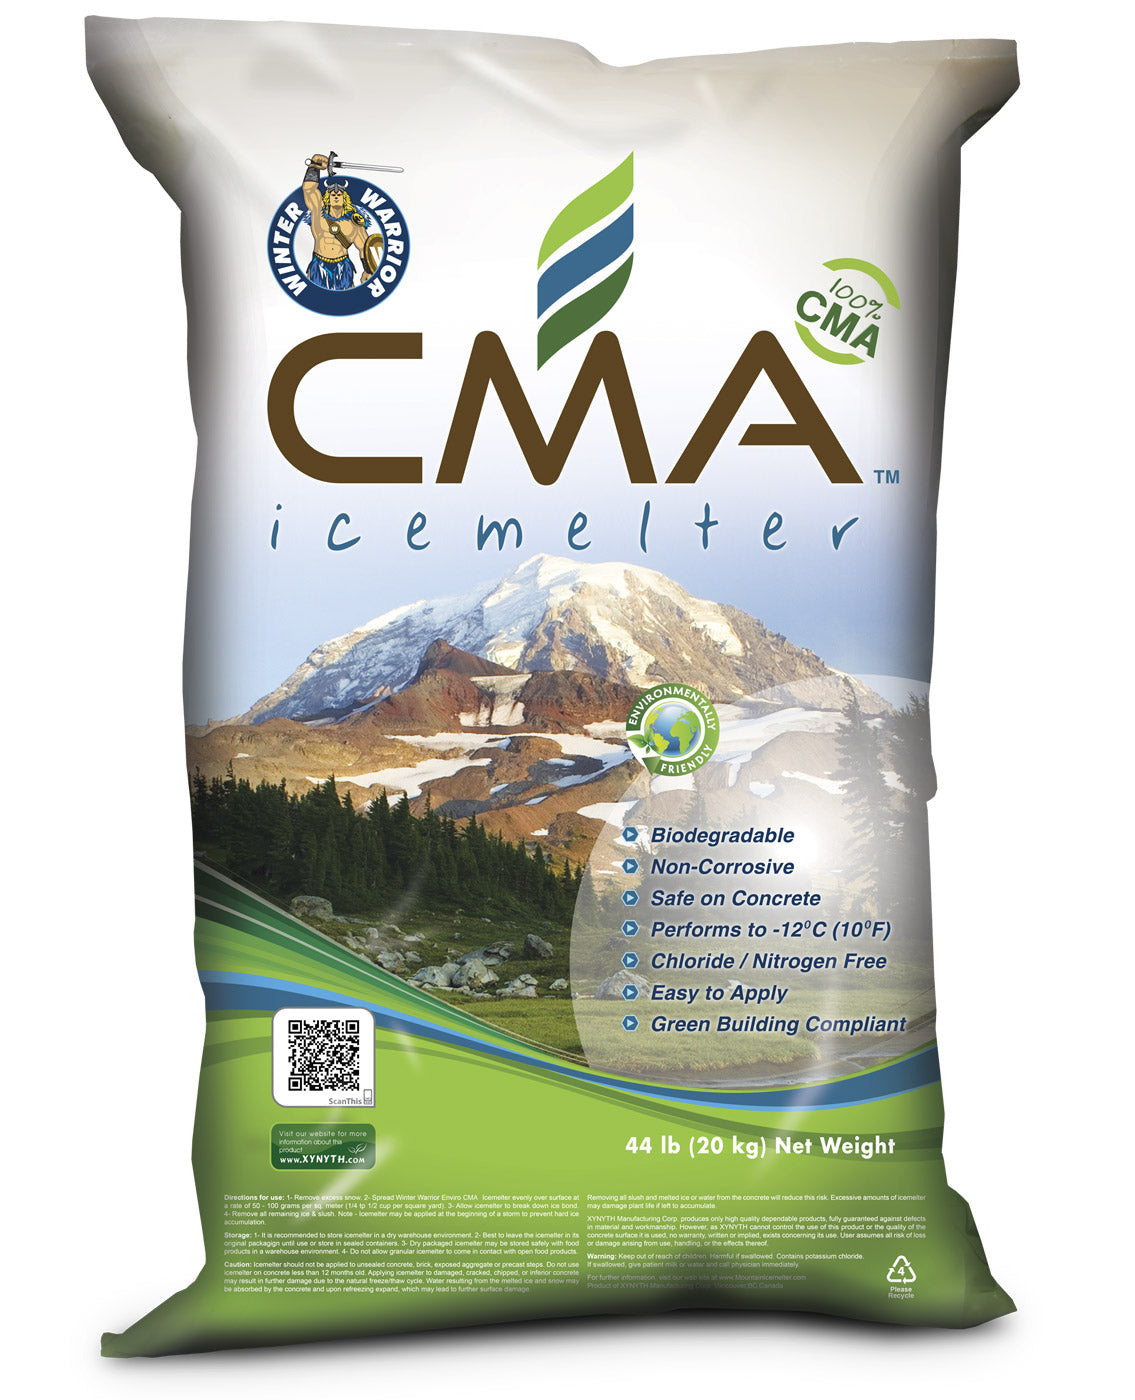 winter warrior cma calcium magnesium acetate ice melt 44lb Bag